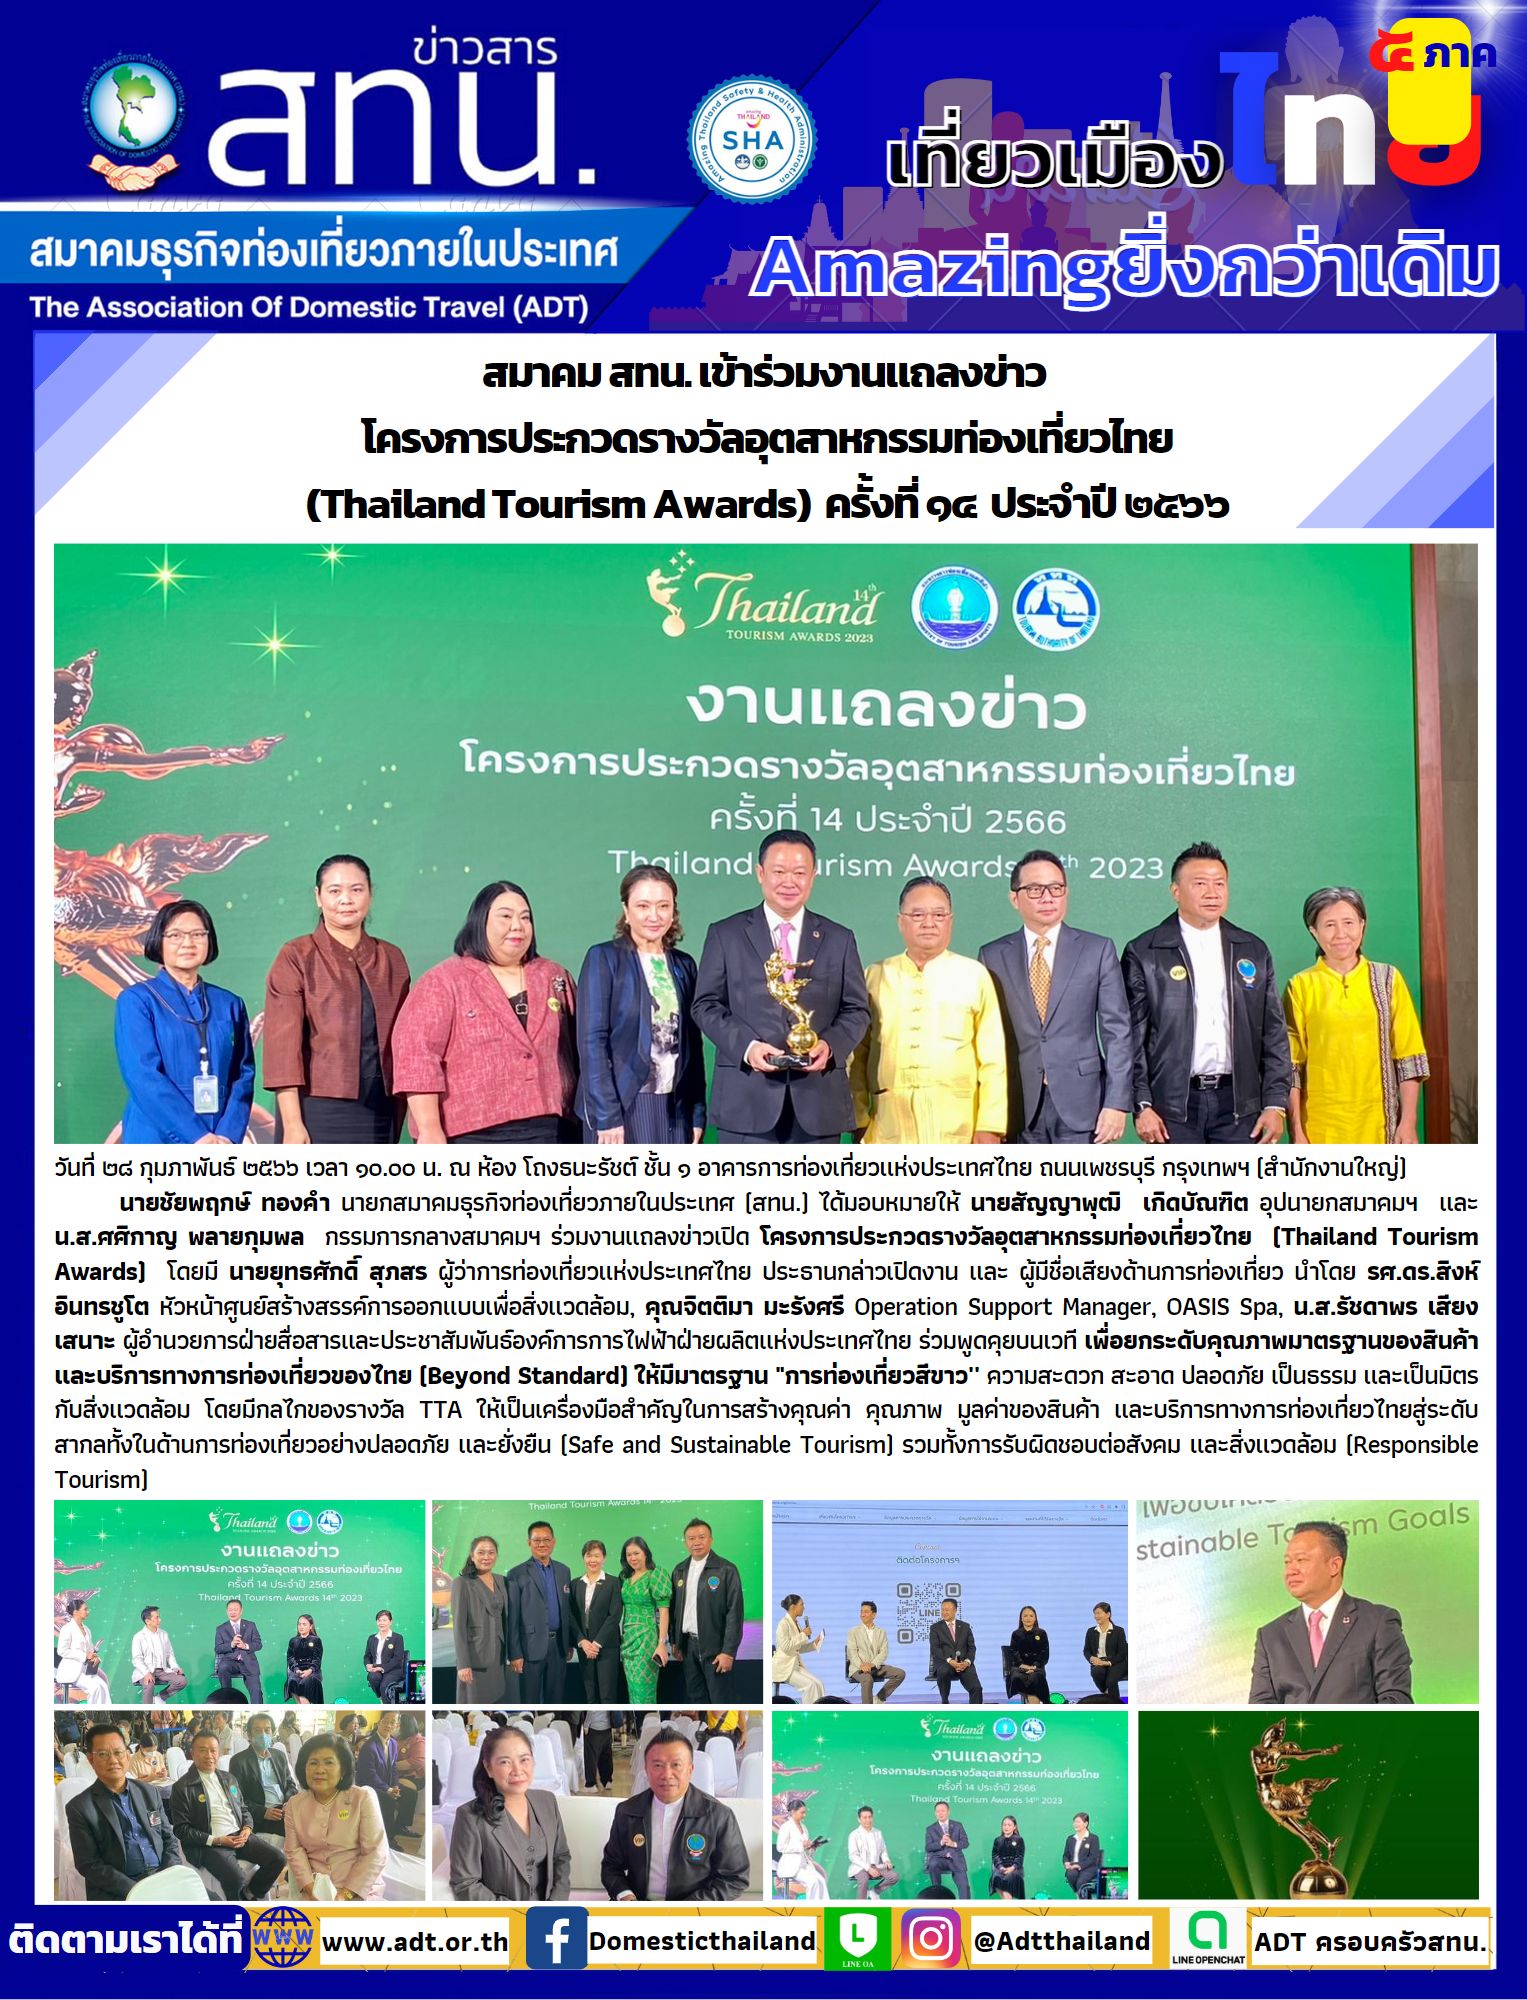 สทน. เข้าร่วมงานแถลงข่าว  โครงการประกวดรางวัลอุตสาหกรรมท่องเที่ยวไทย (Thailand Tourism Awards)  ครั้งที่ ๑๔  ประจำปี ๒๕๖๖